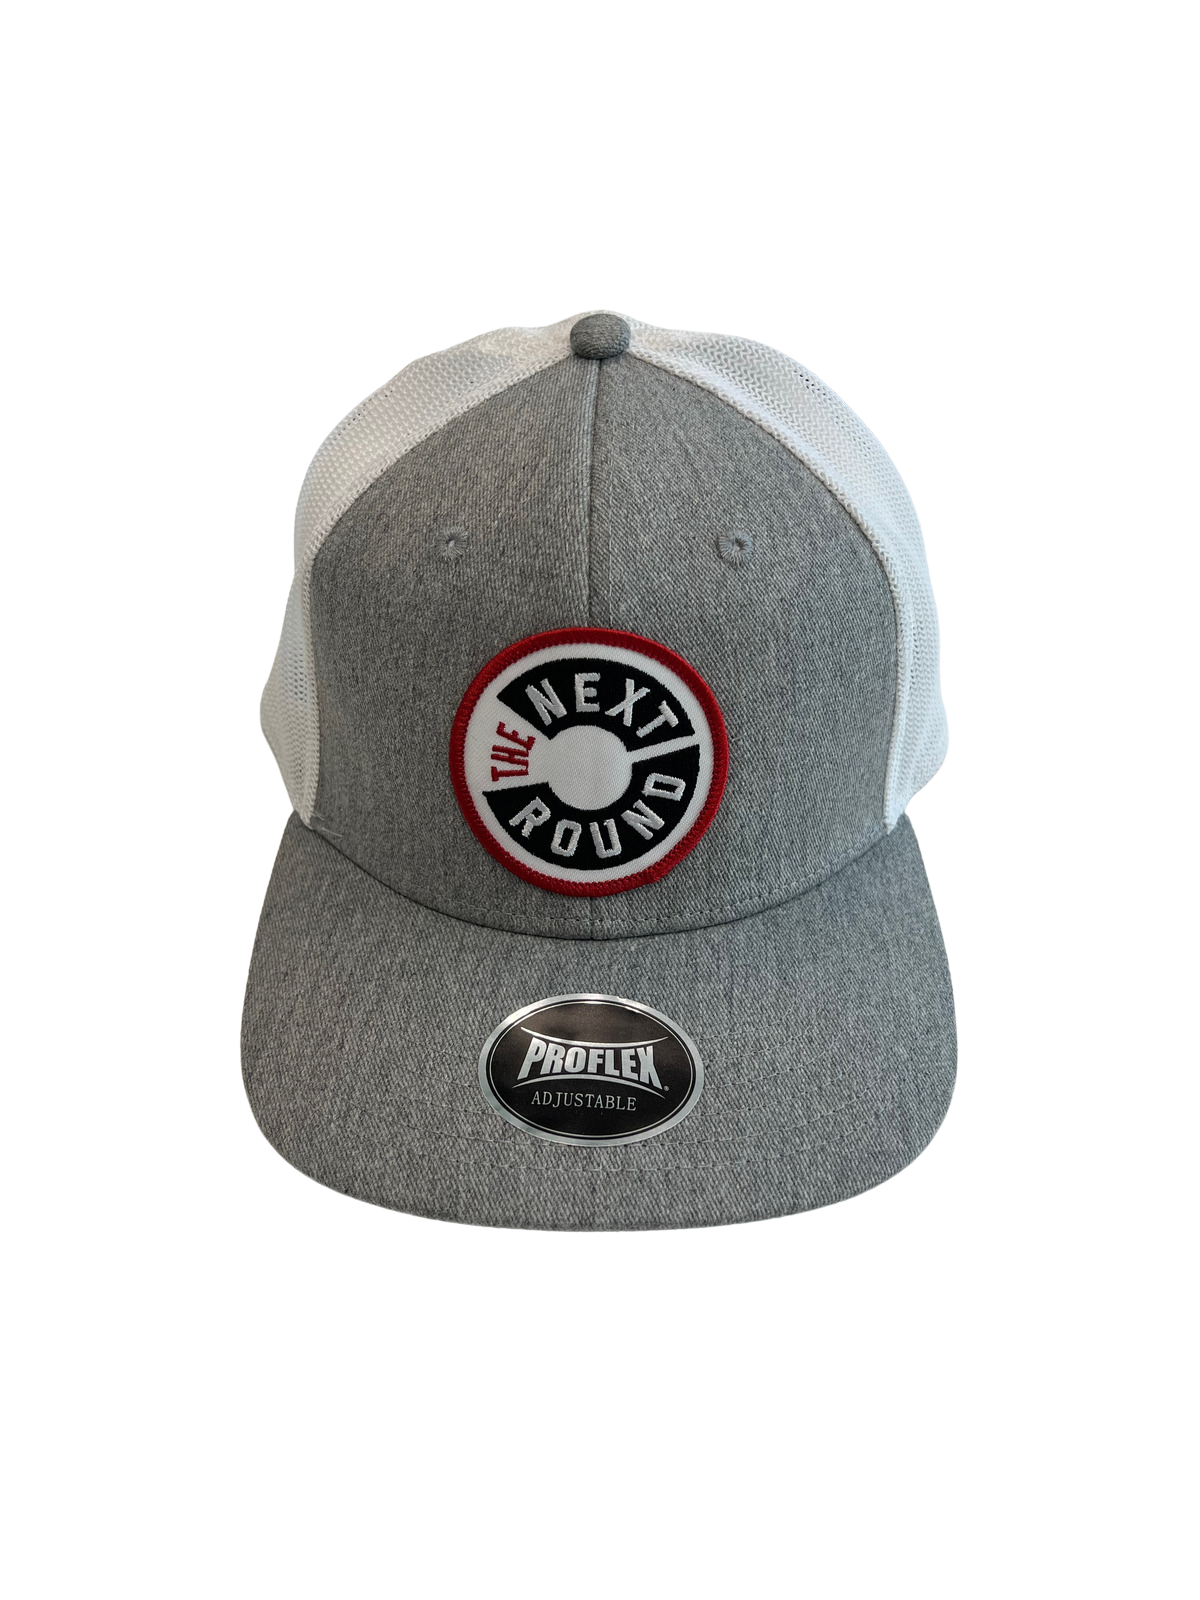 Next Round Logo Patch Outdoor ProFlex Snapback Hat (Grey/White)